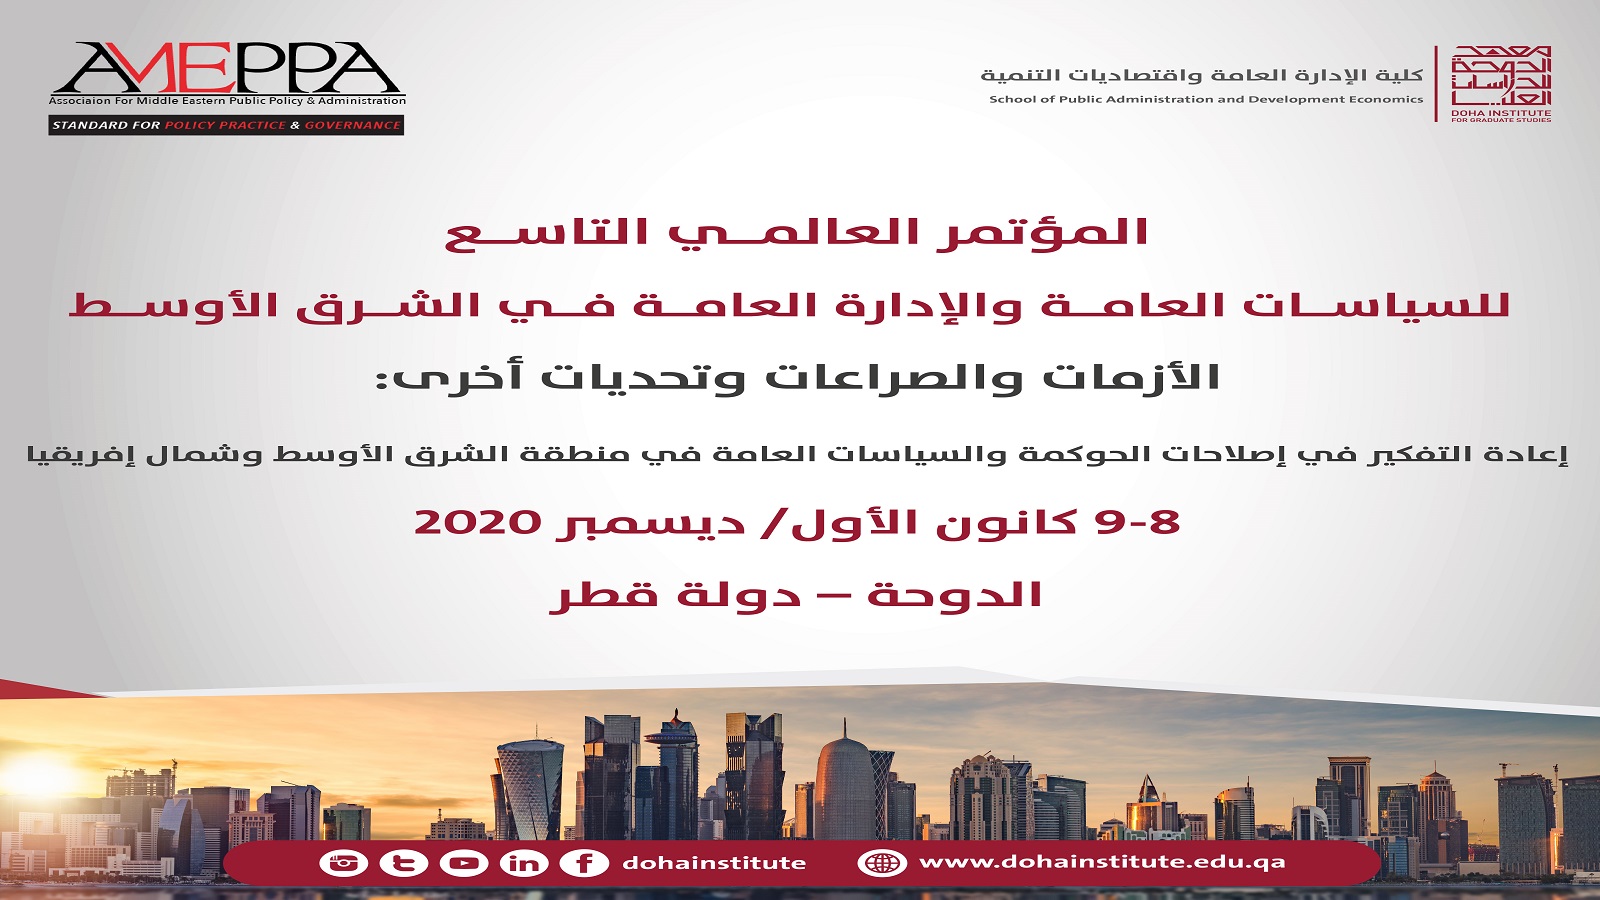 معهد الدوحة ينظم المؤتمر العالمي للإدارة في الشرق الأوسط